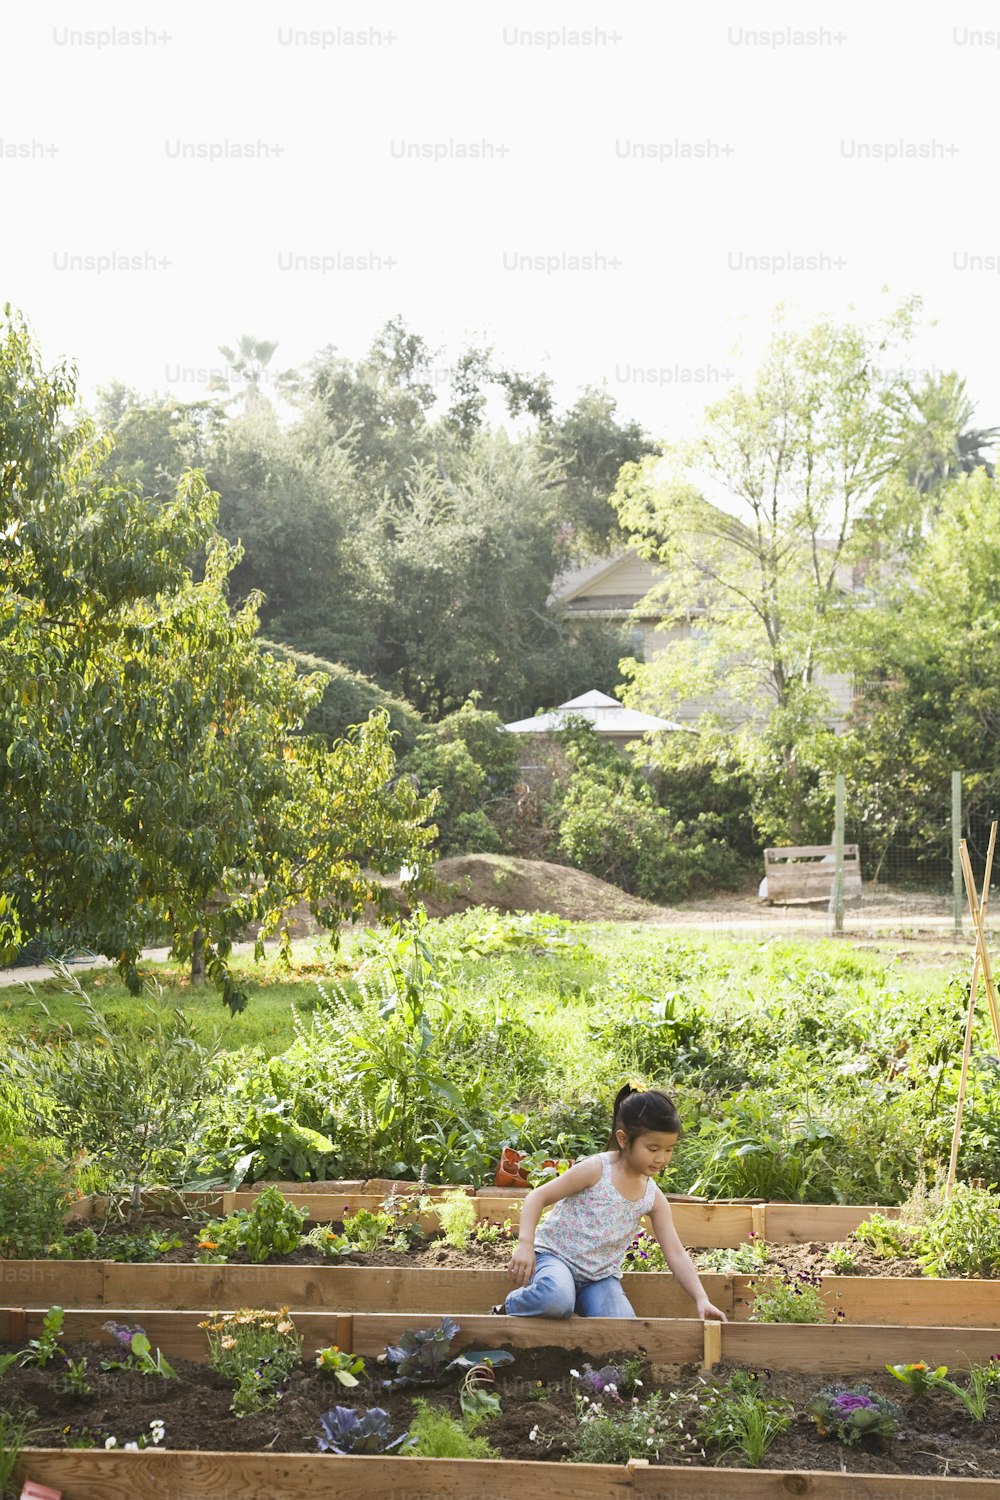 Una mujer arrodillada en un jardín lleno de muchas plantas